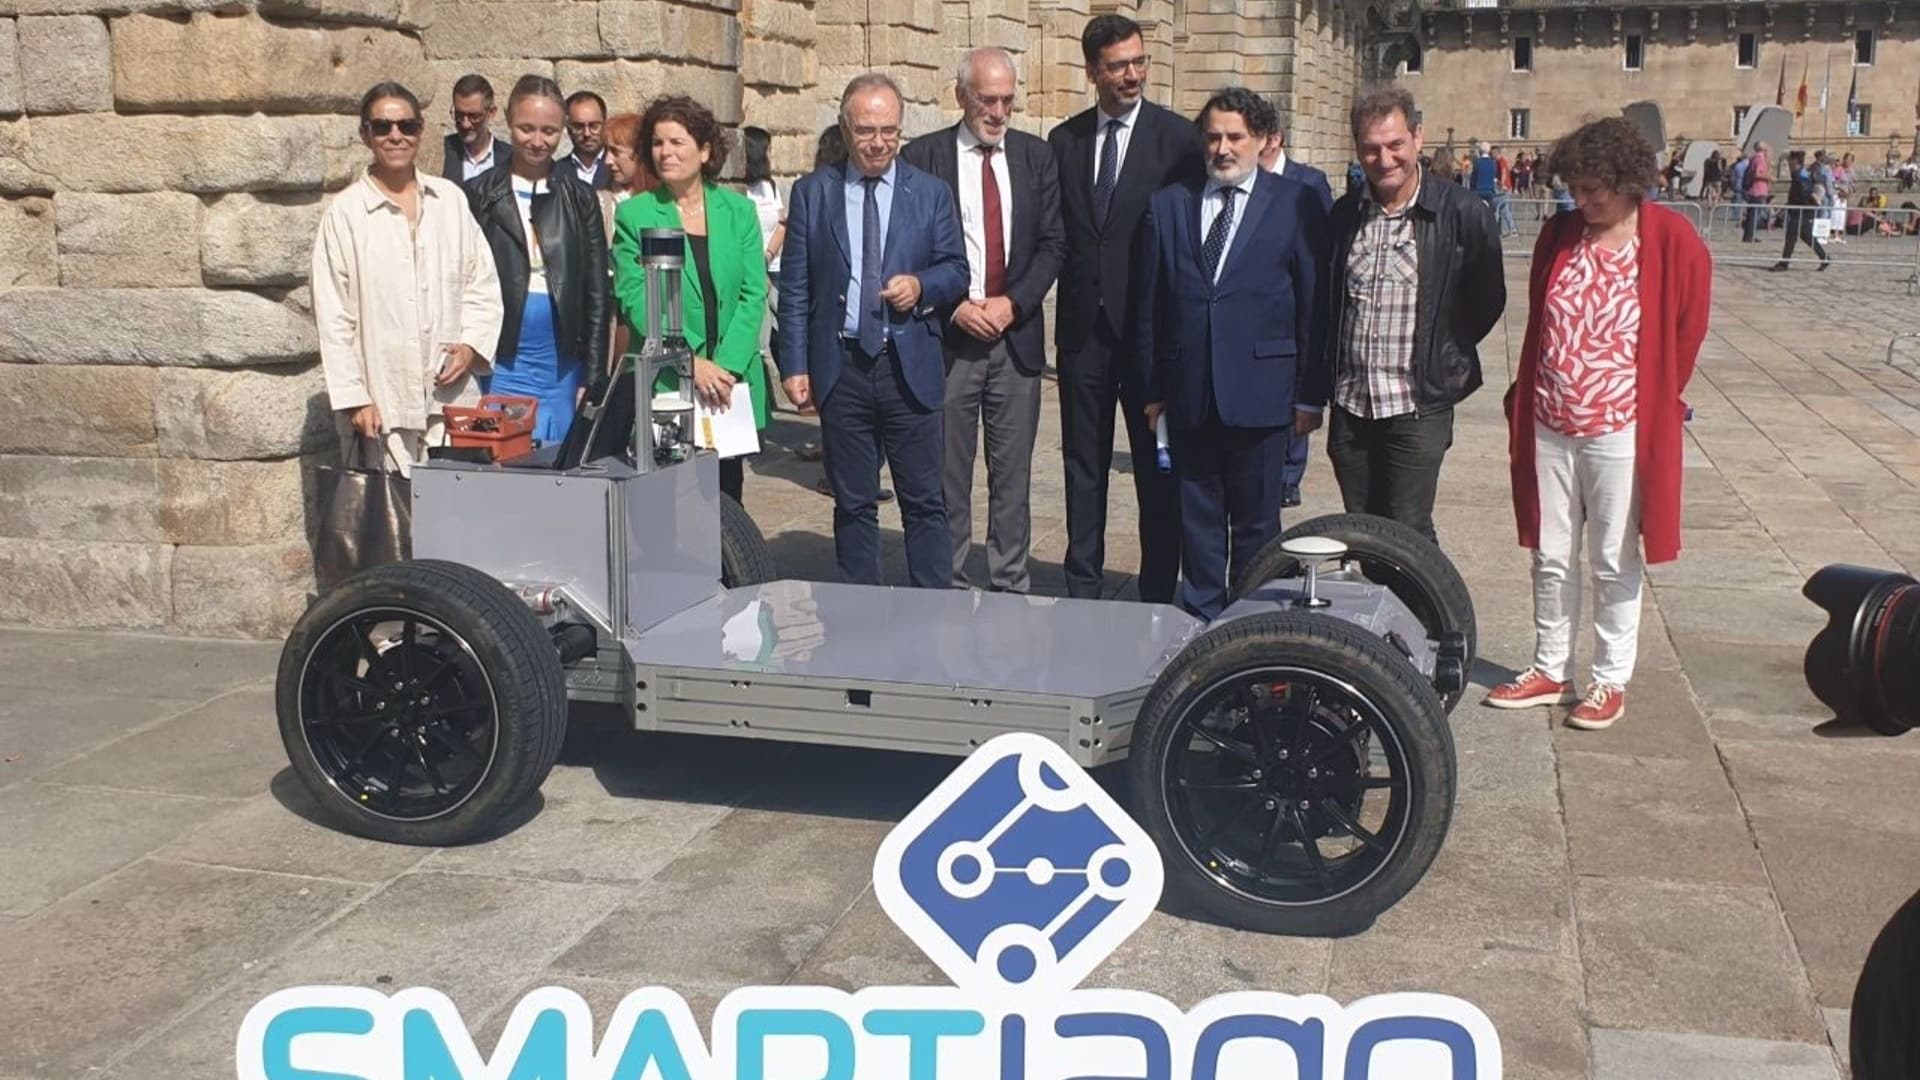 La presentación del vehículo autónomo de Smartiago | CONCELLO DE SANTIAGO